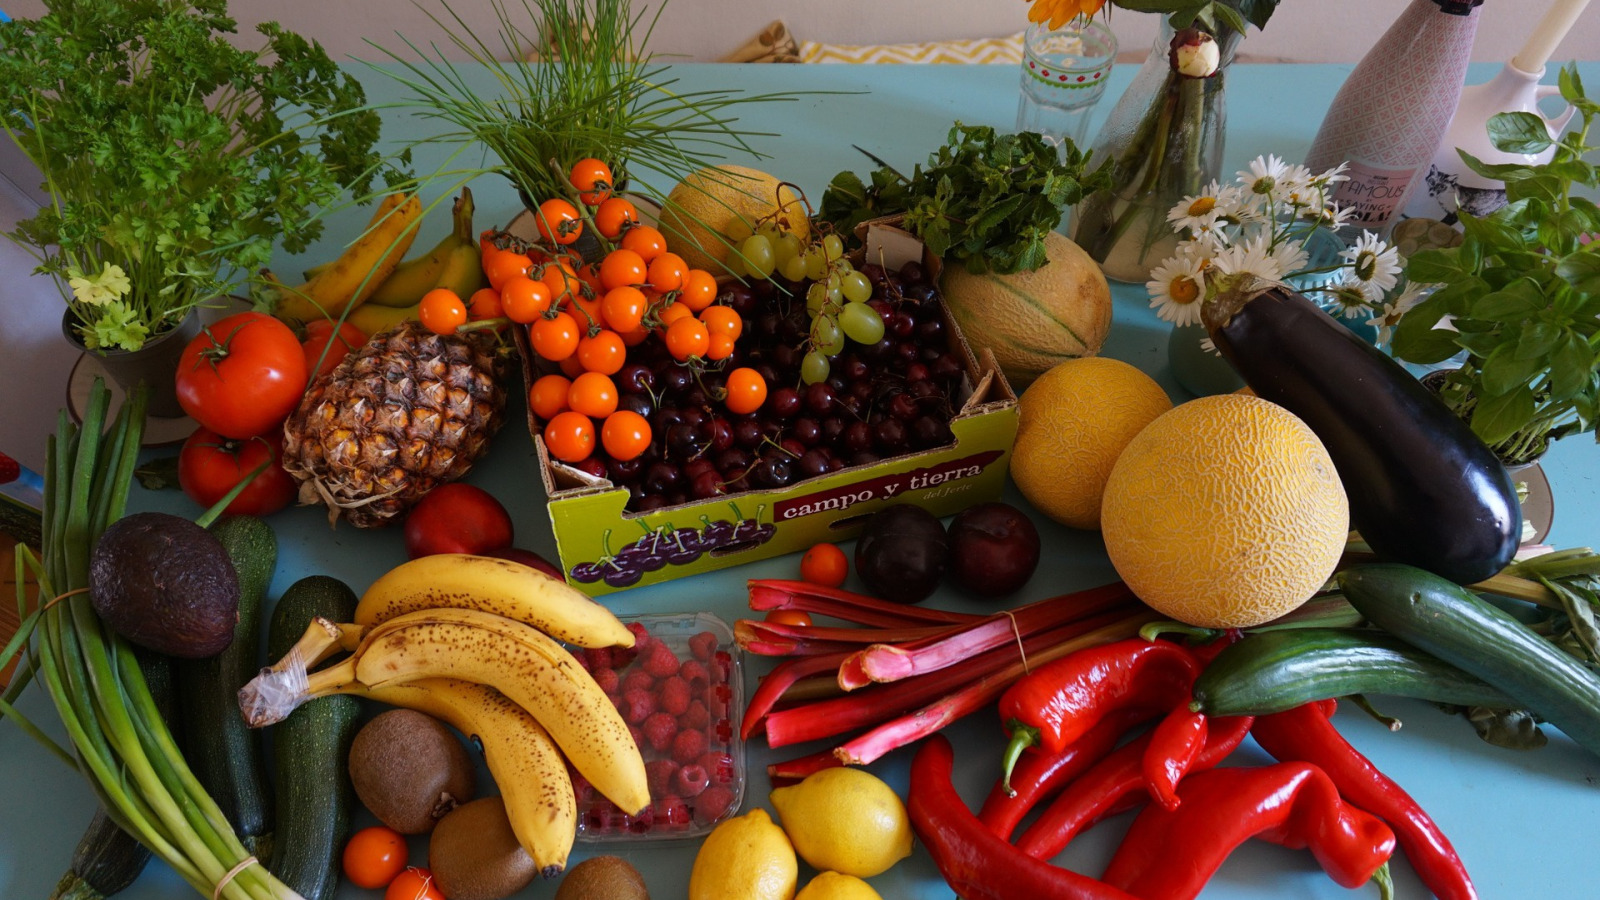 Фруктовый пост. Овощи и фрукты. Продукты овощи. Еда фрукты и овощи. Здоровое питание фрукты.